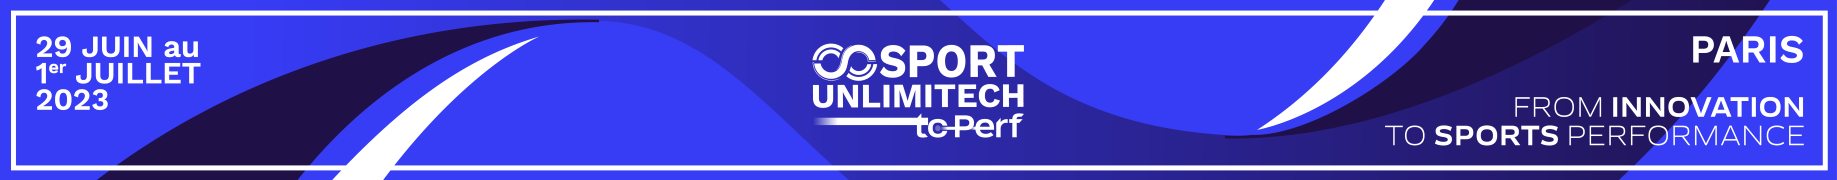 Sport Unlimitech ToPerf 2023